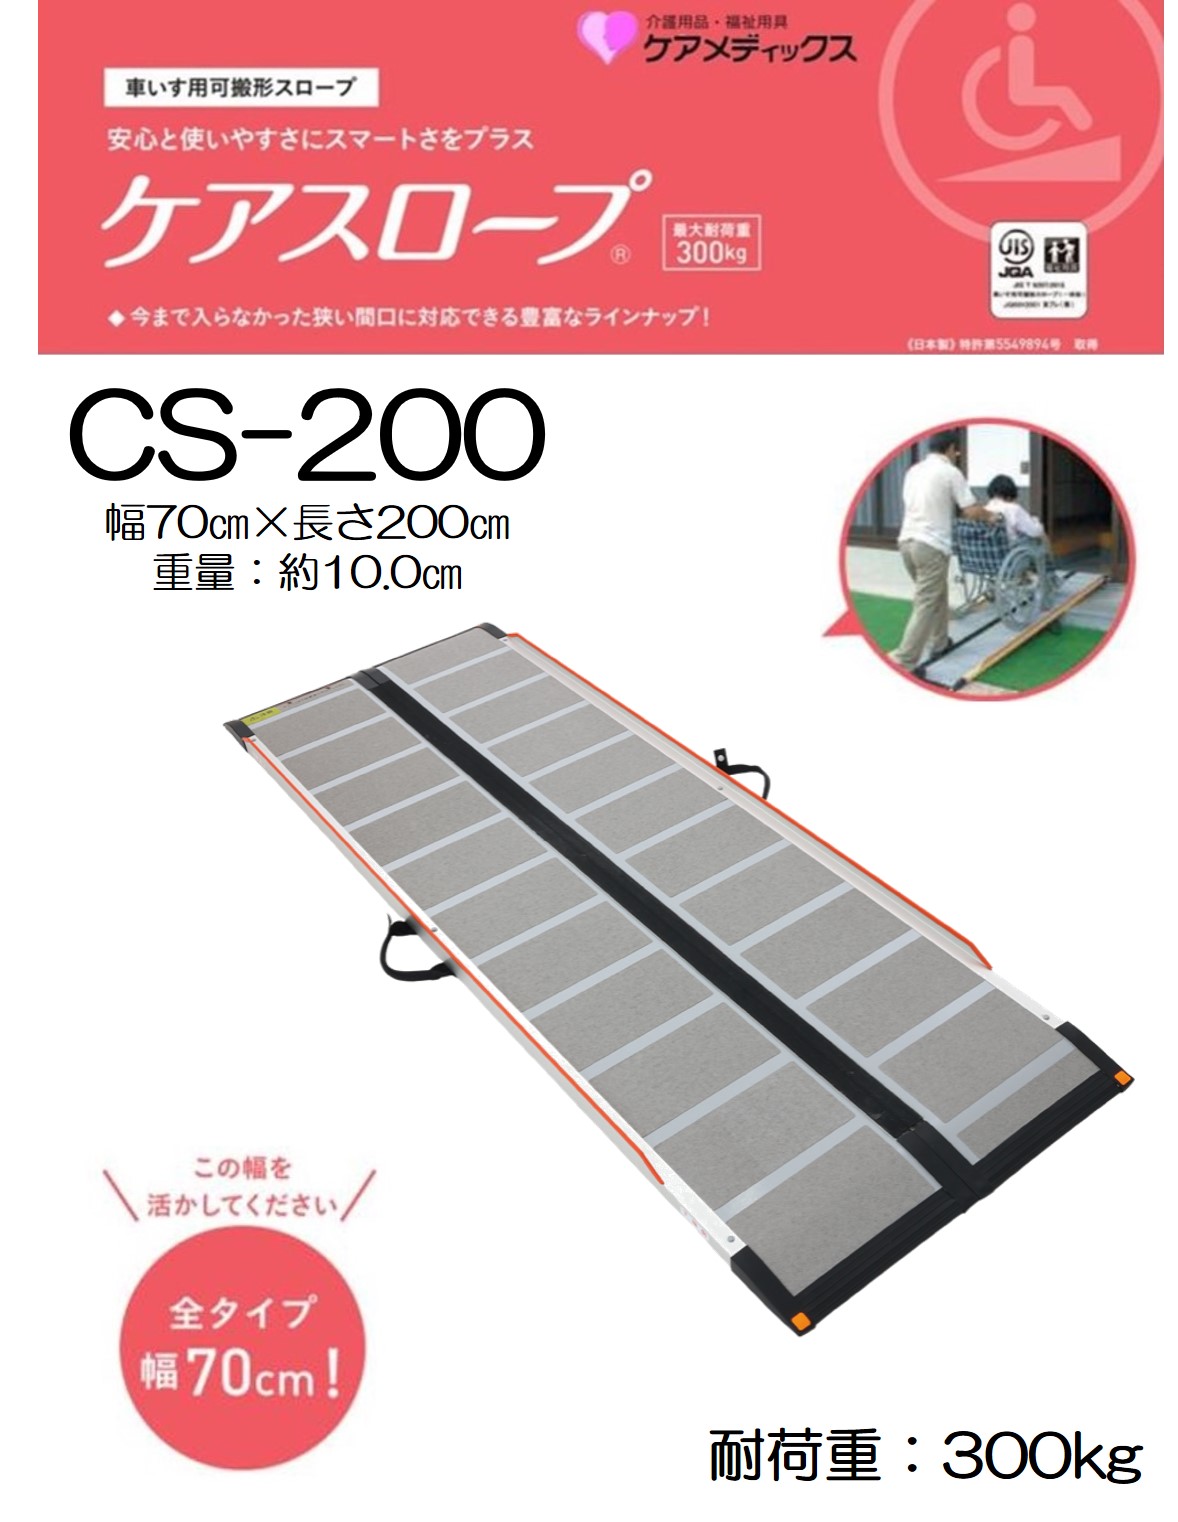 【新品】 ケアスロープ CS-200